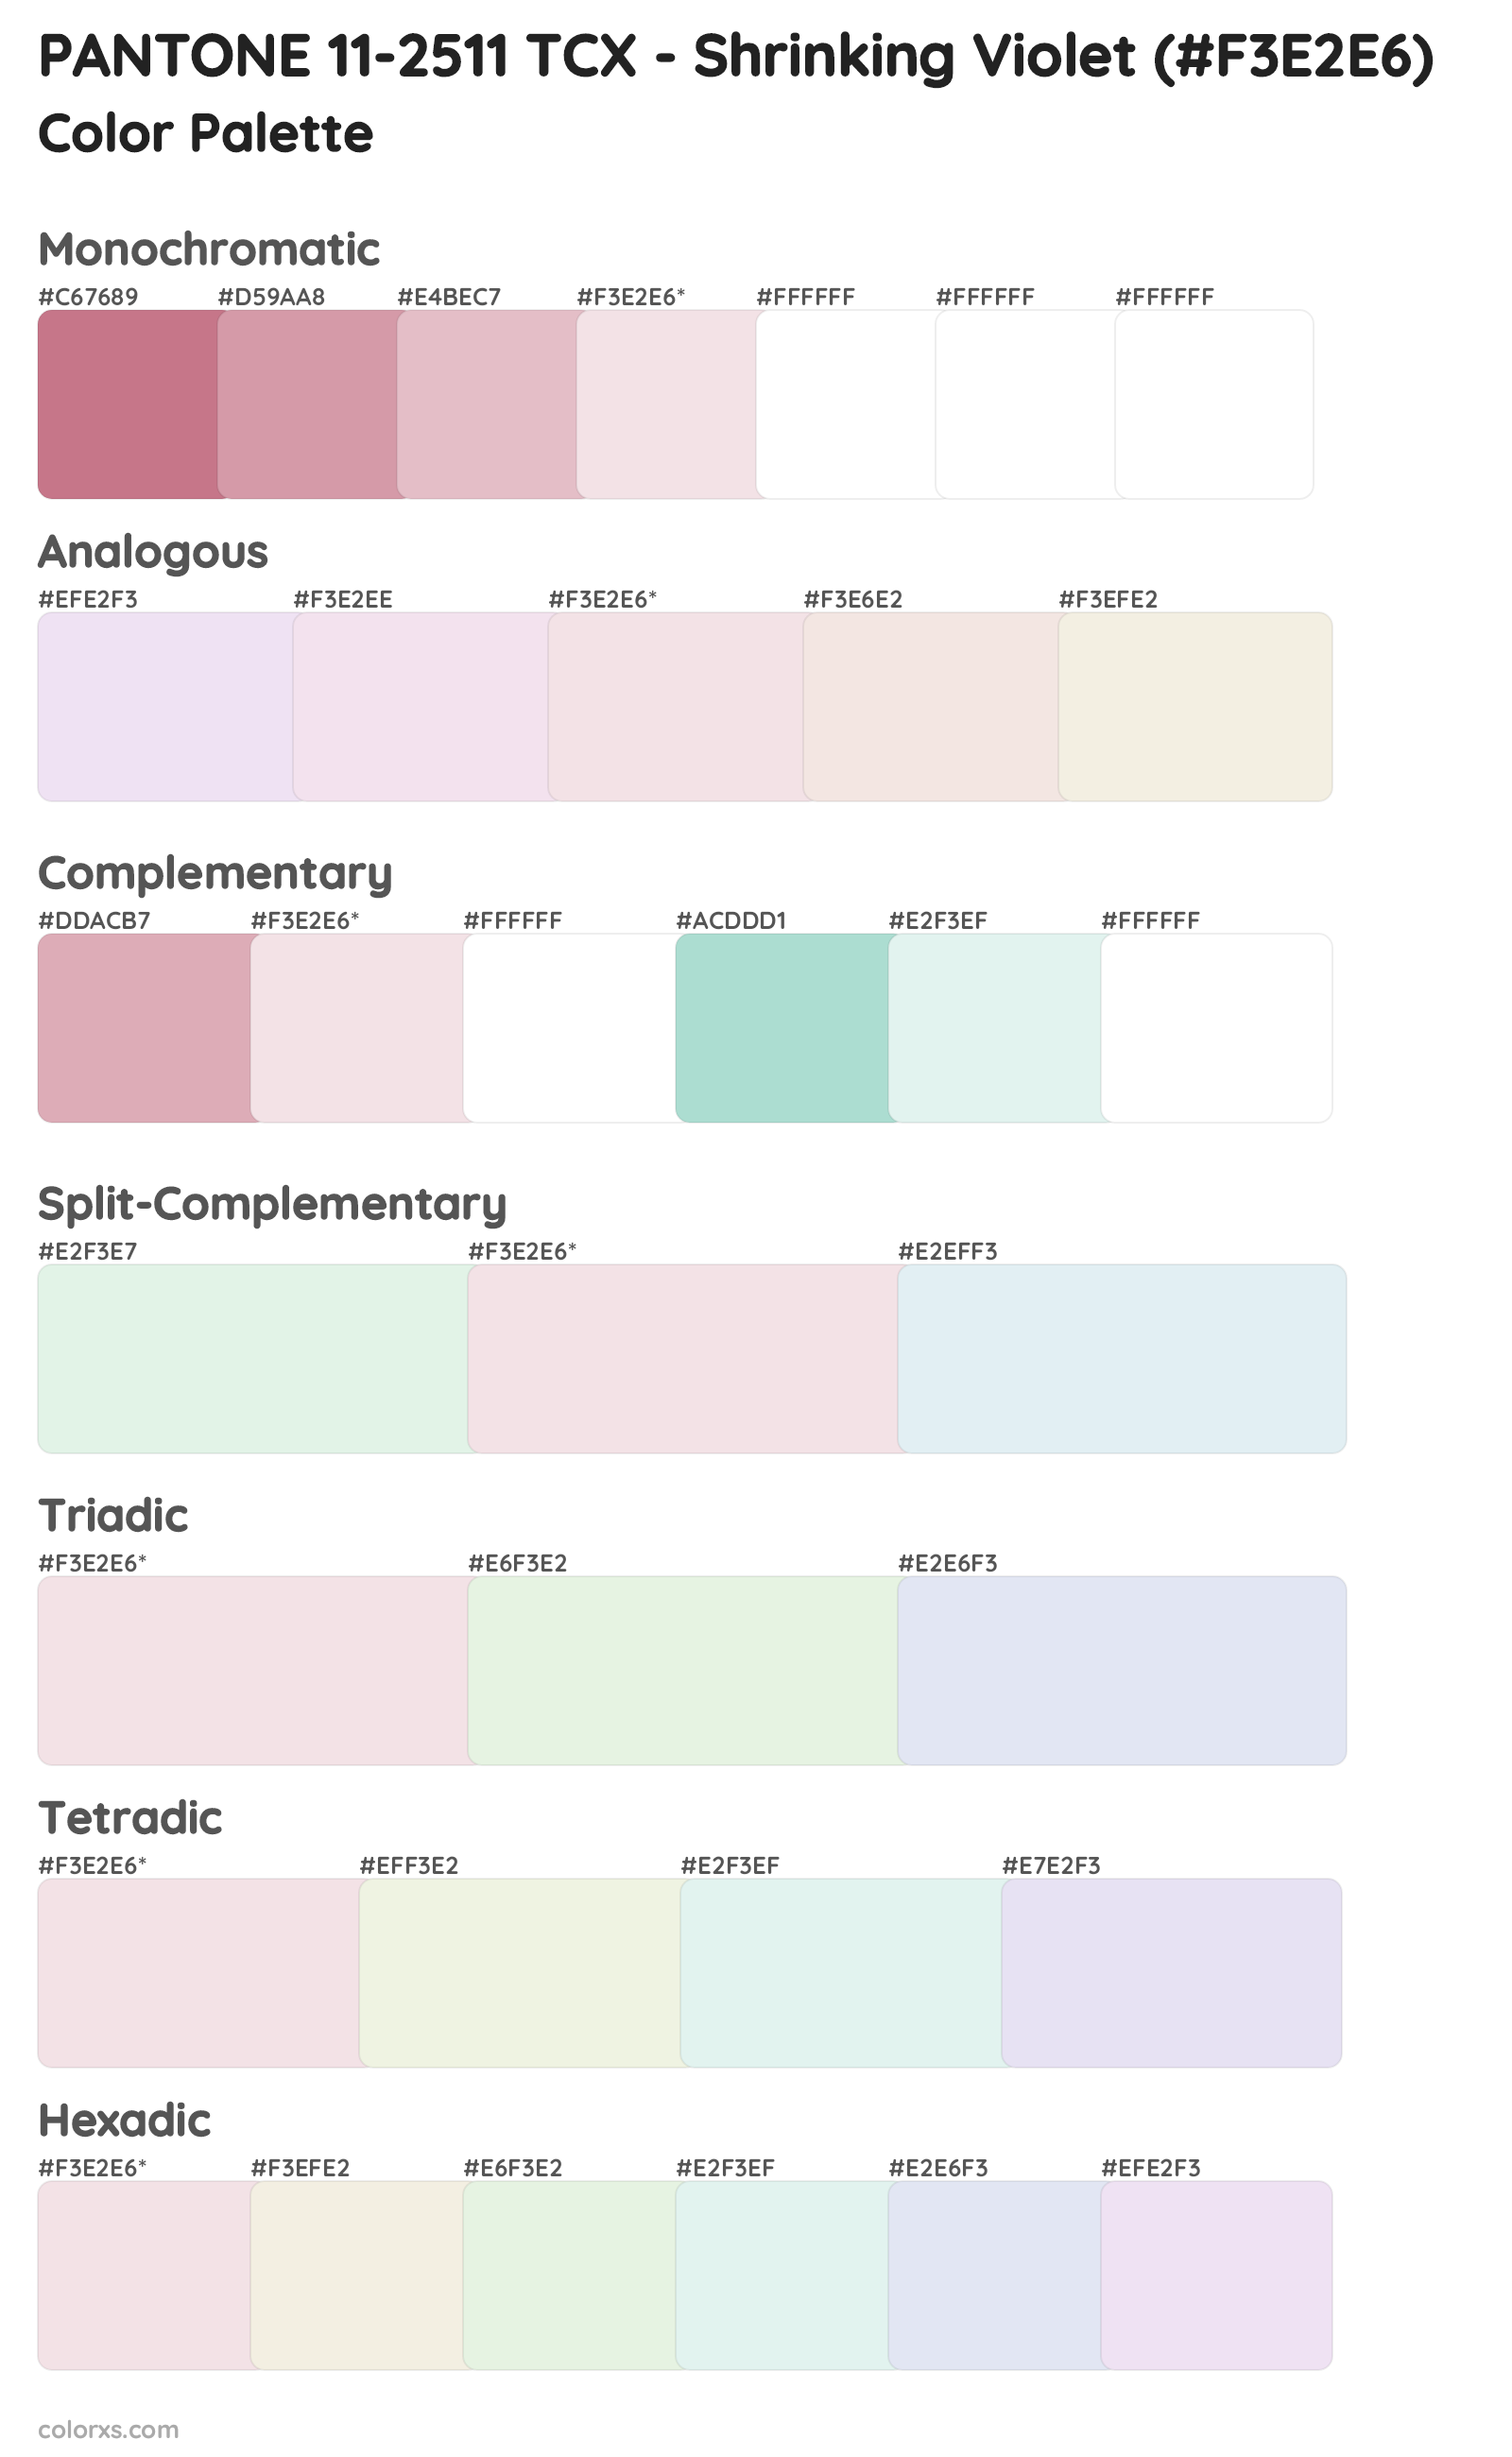 PANTONE 11-2511 TCX - Shrinking Violet Color Scheme Palettes